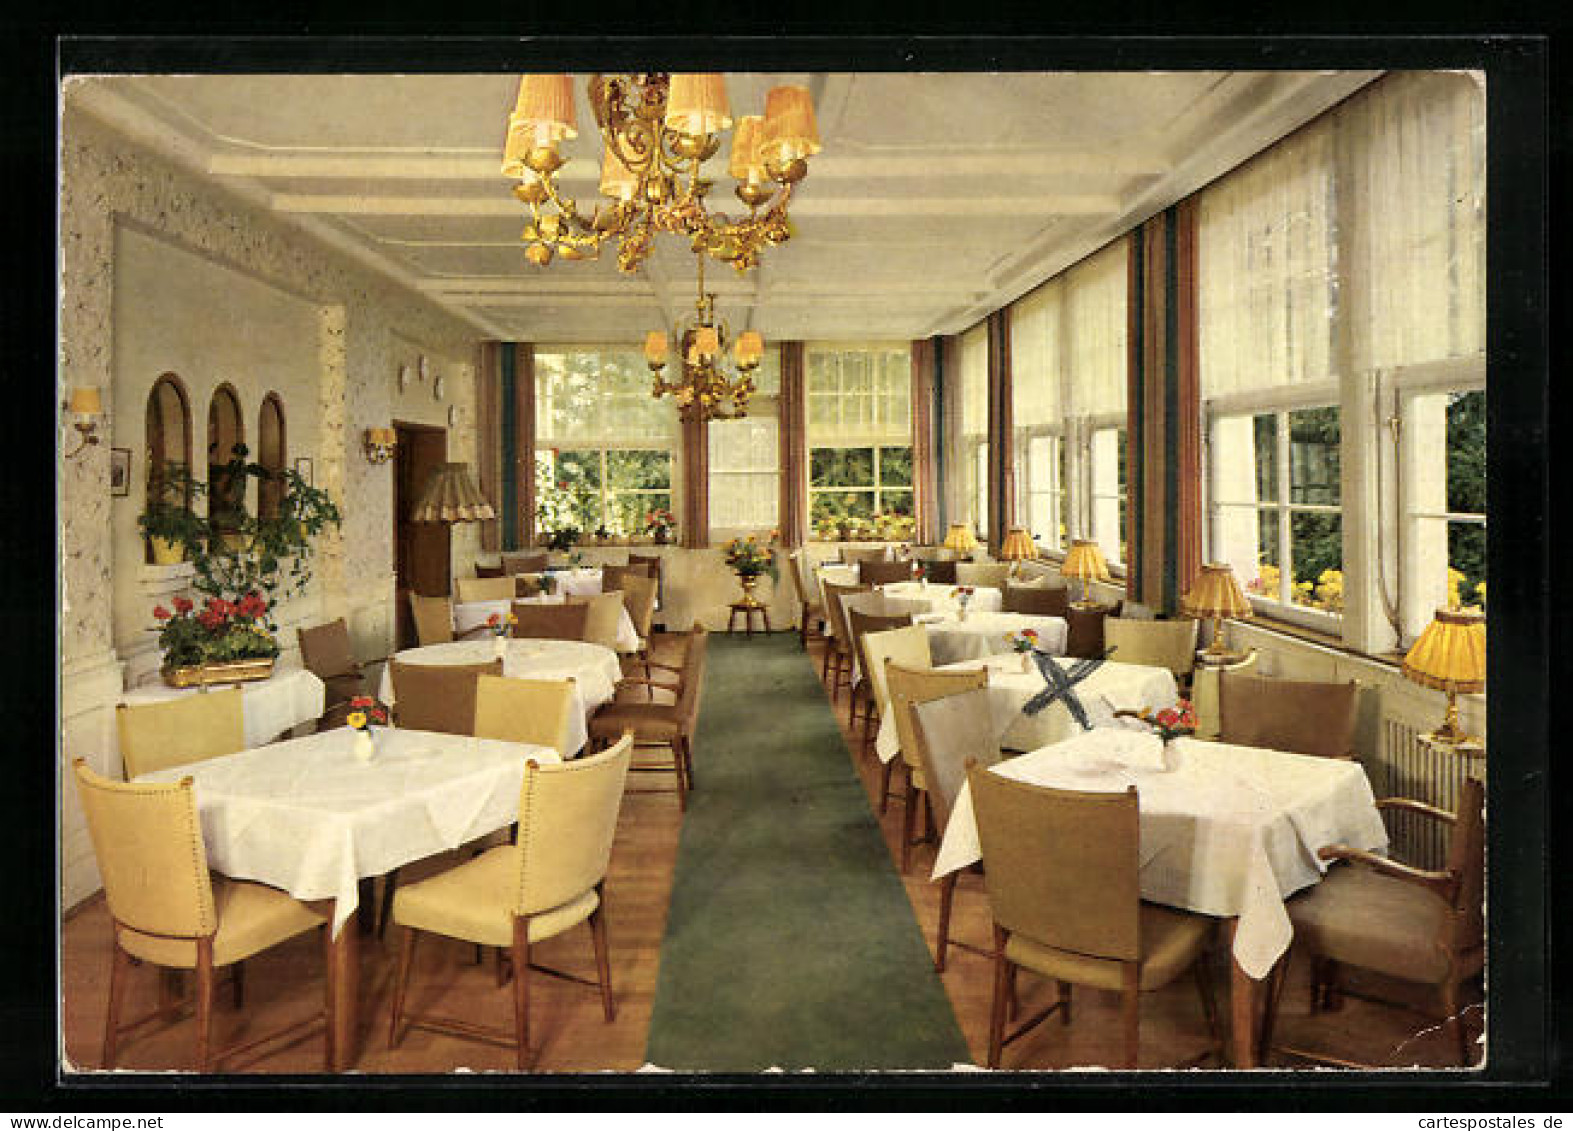 AK Hinterzarten /Schwarzwald, Hotel Weisses Rössle, W. Würth  - Hinterzarten